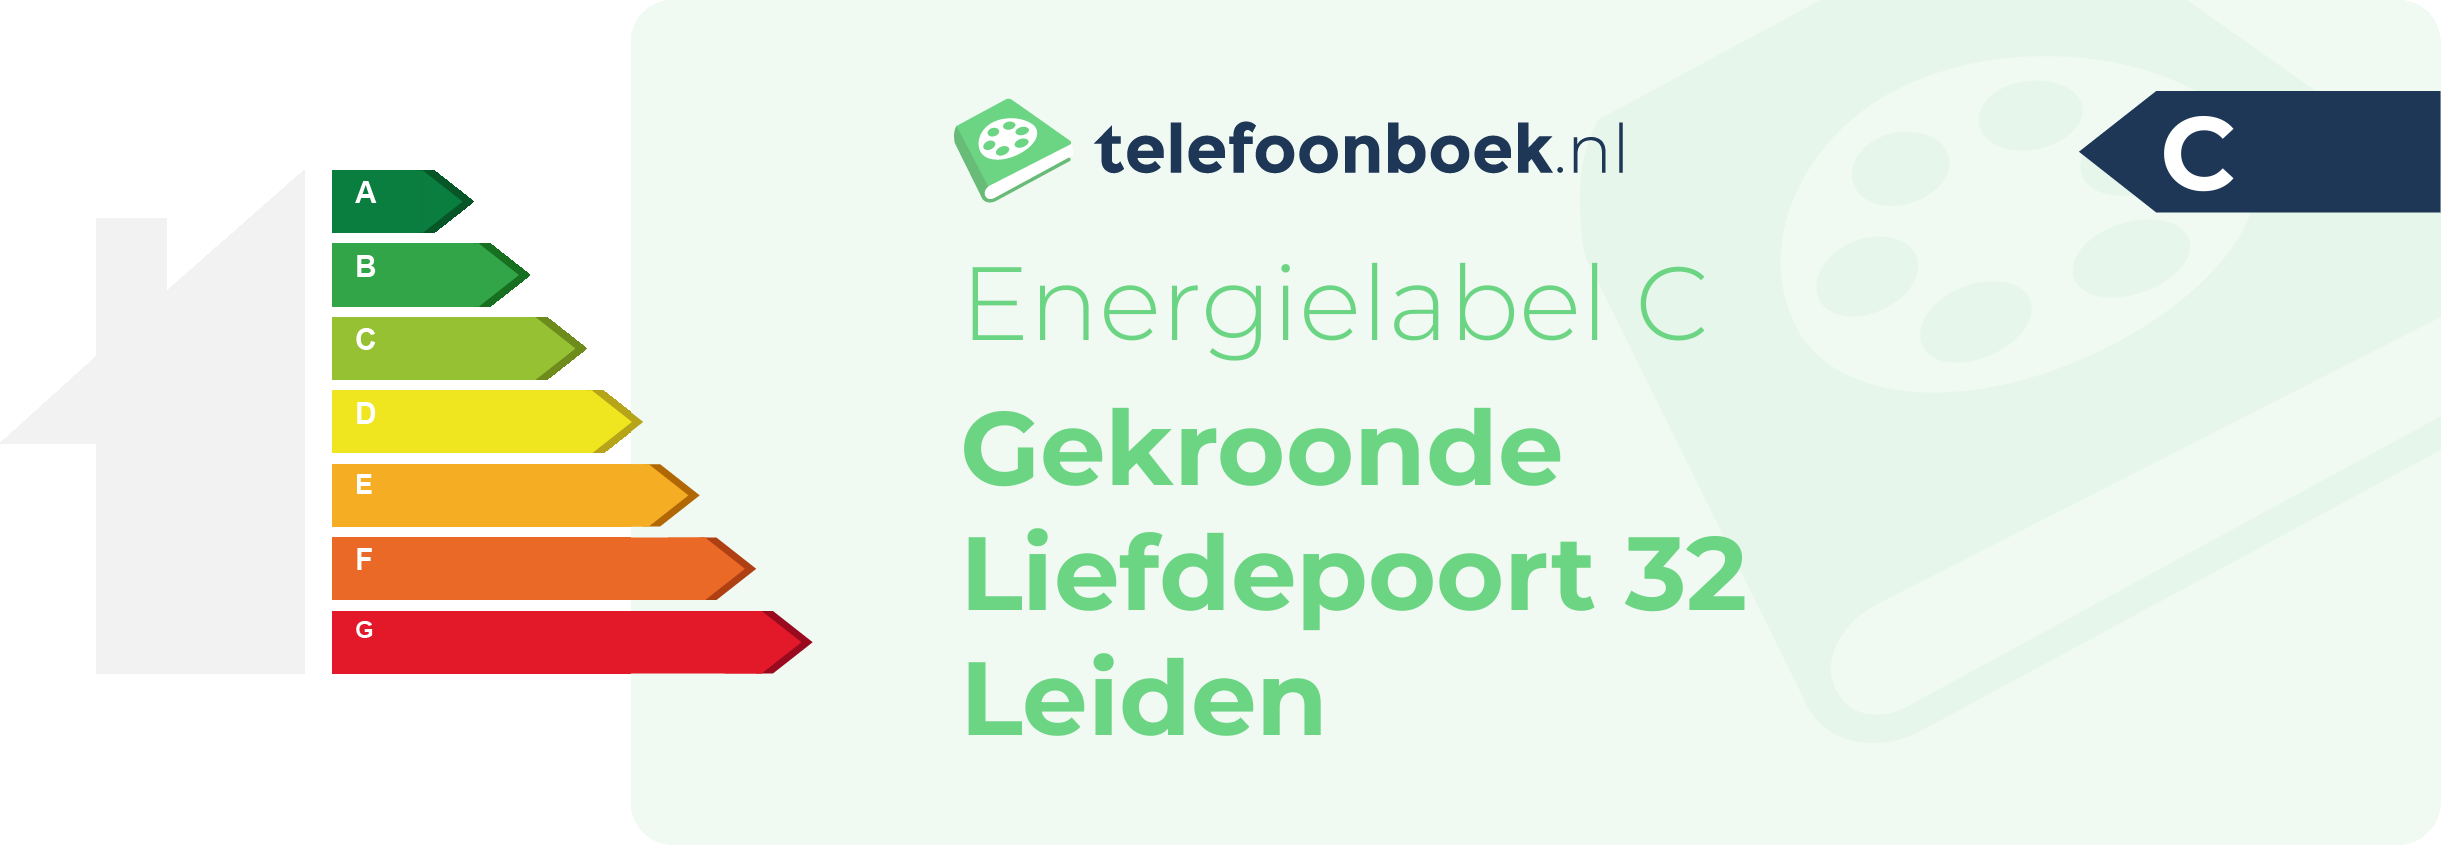 Energielabel Gekroonde Liefdepoort 32 Leiden